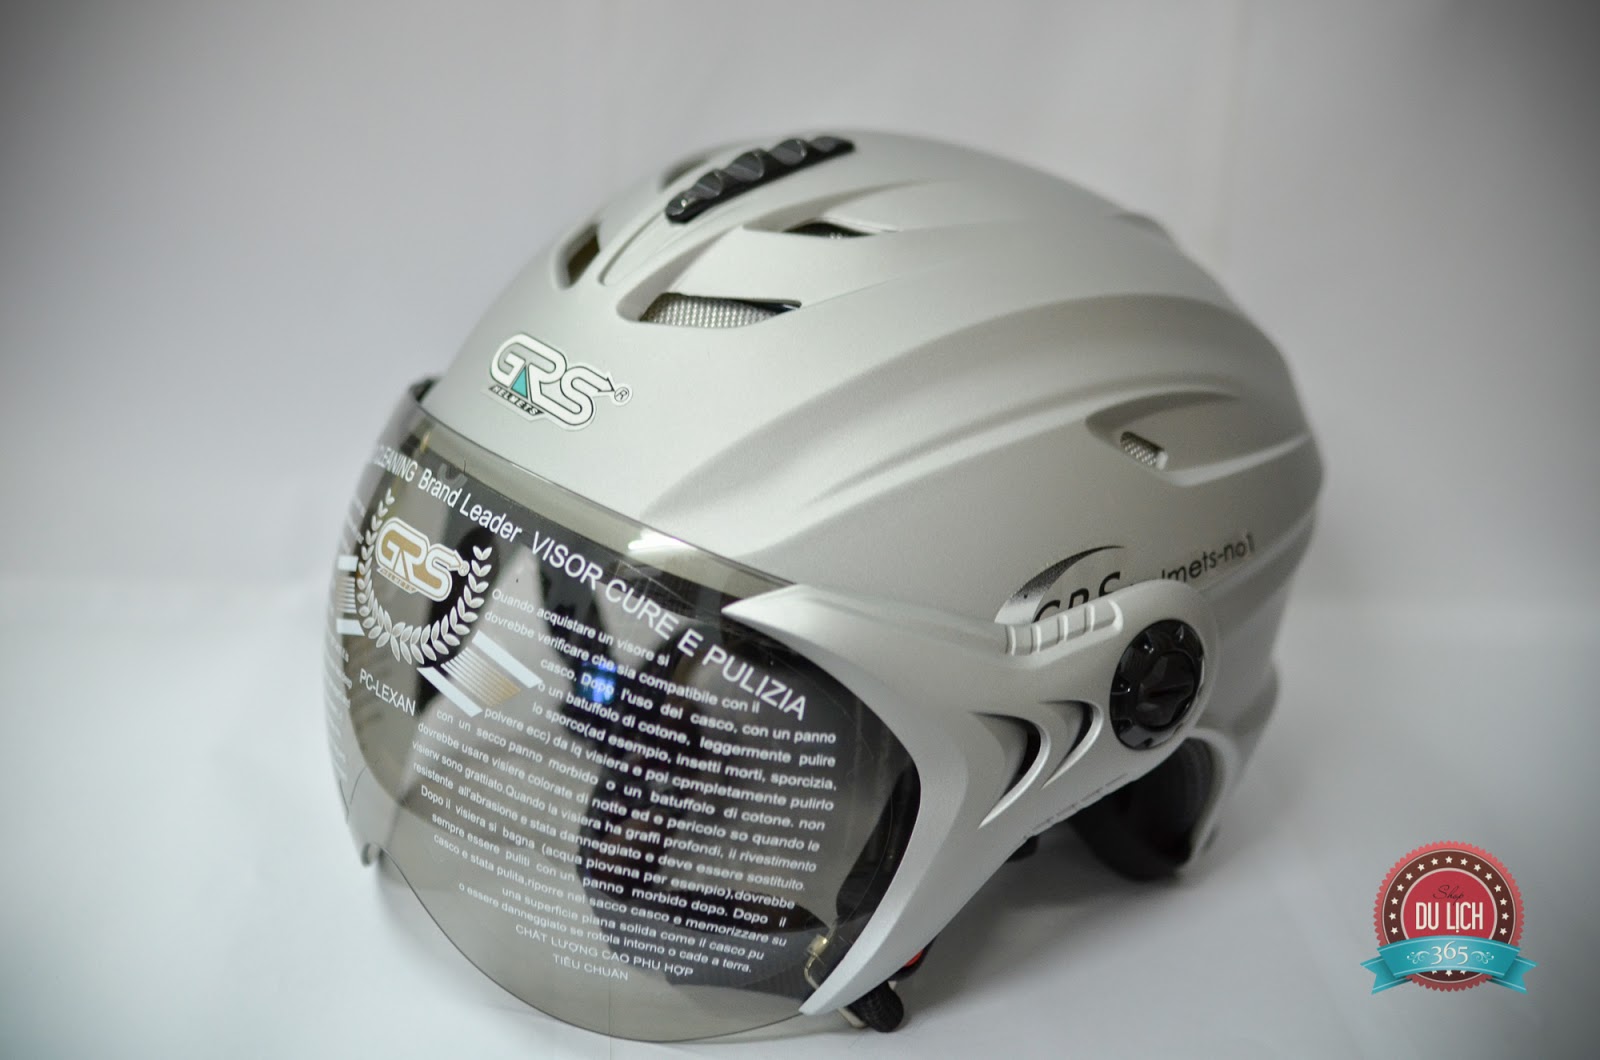 mũ bảo hiểm có kính chính hãng GRS màu trắng bạc, phong cách sang trọng, phản chiếu ánh sáng nên chóng nóng, thích hợp khi đi xa